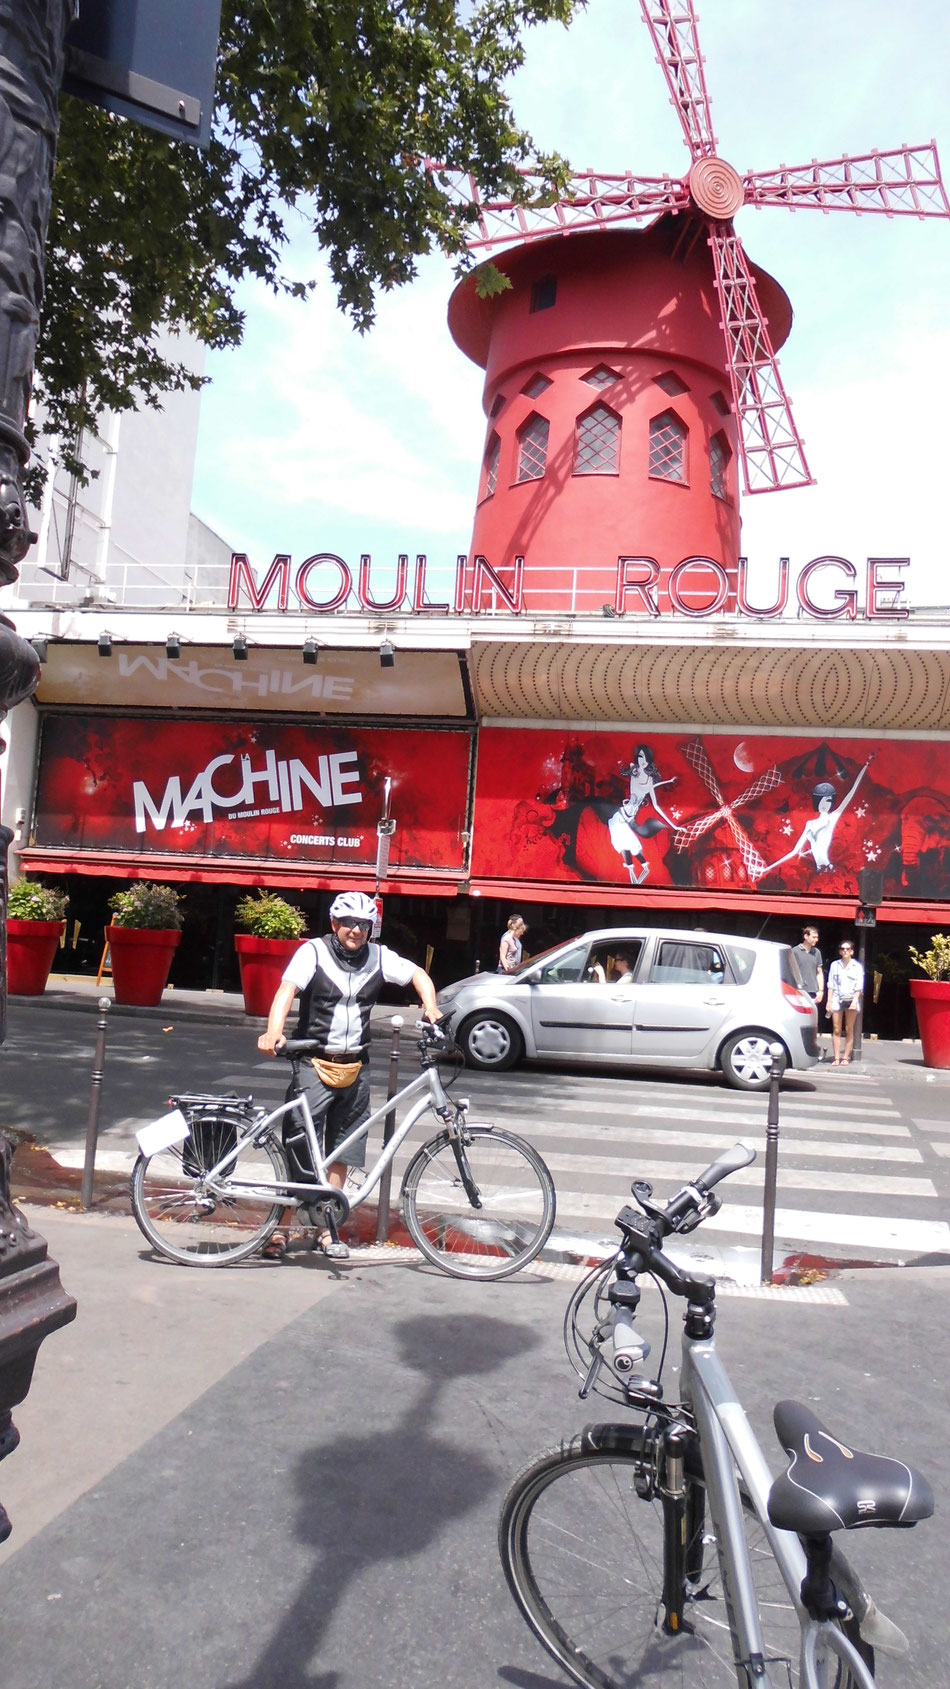 Bild: HDW, e-bike, Berlin-Paris, Moulin Rouge